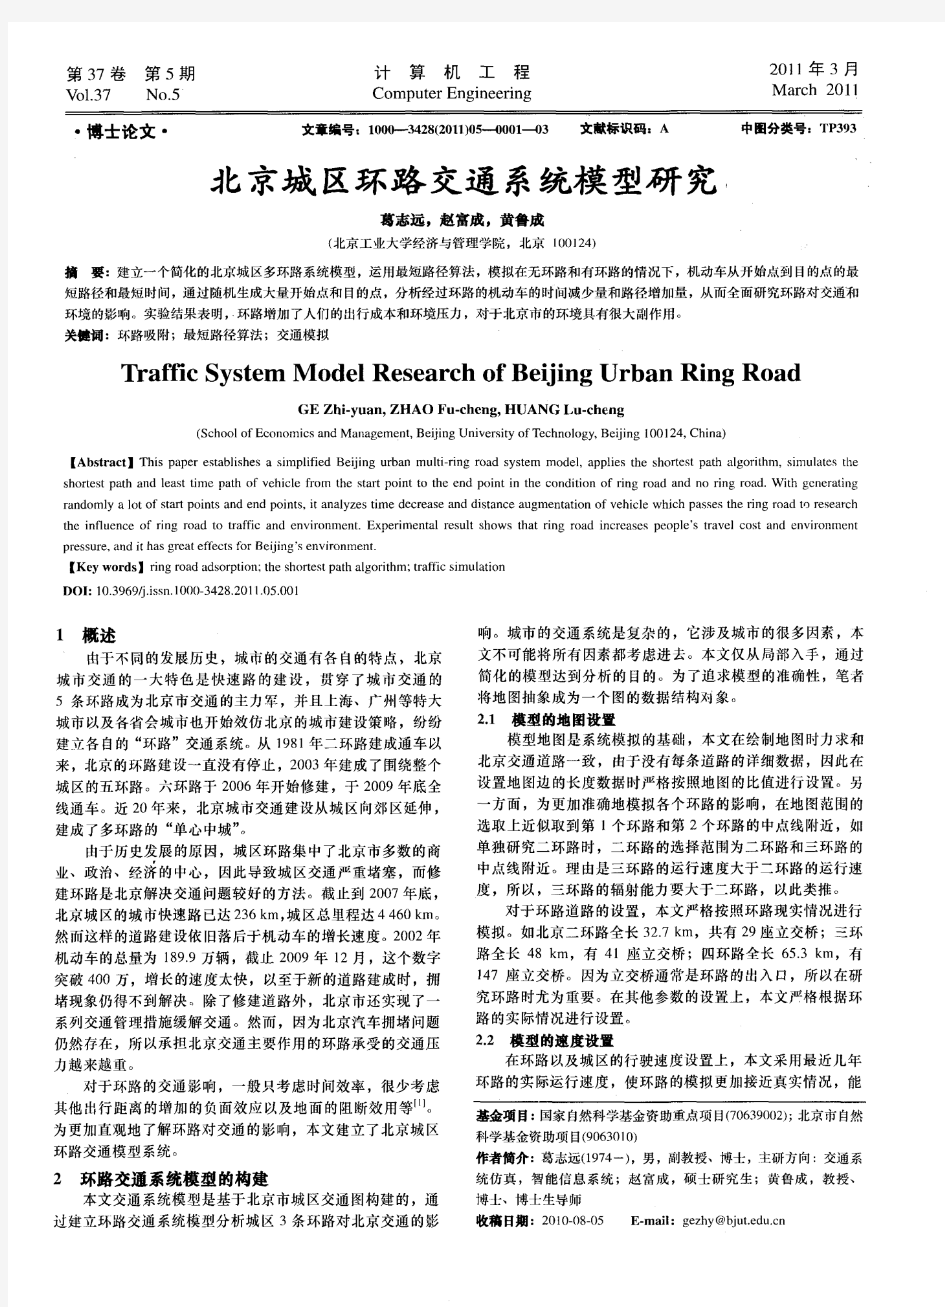 北京城区环路交通系统模型研究